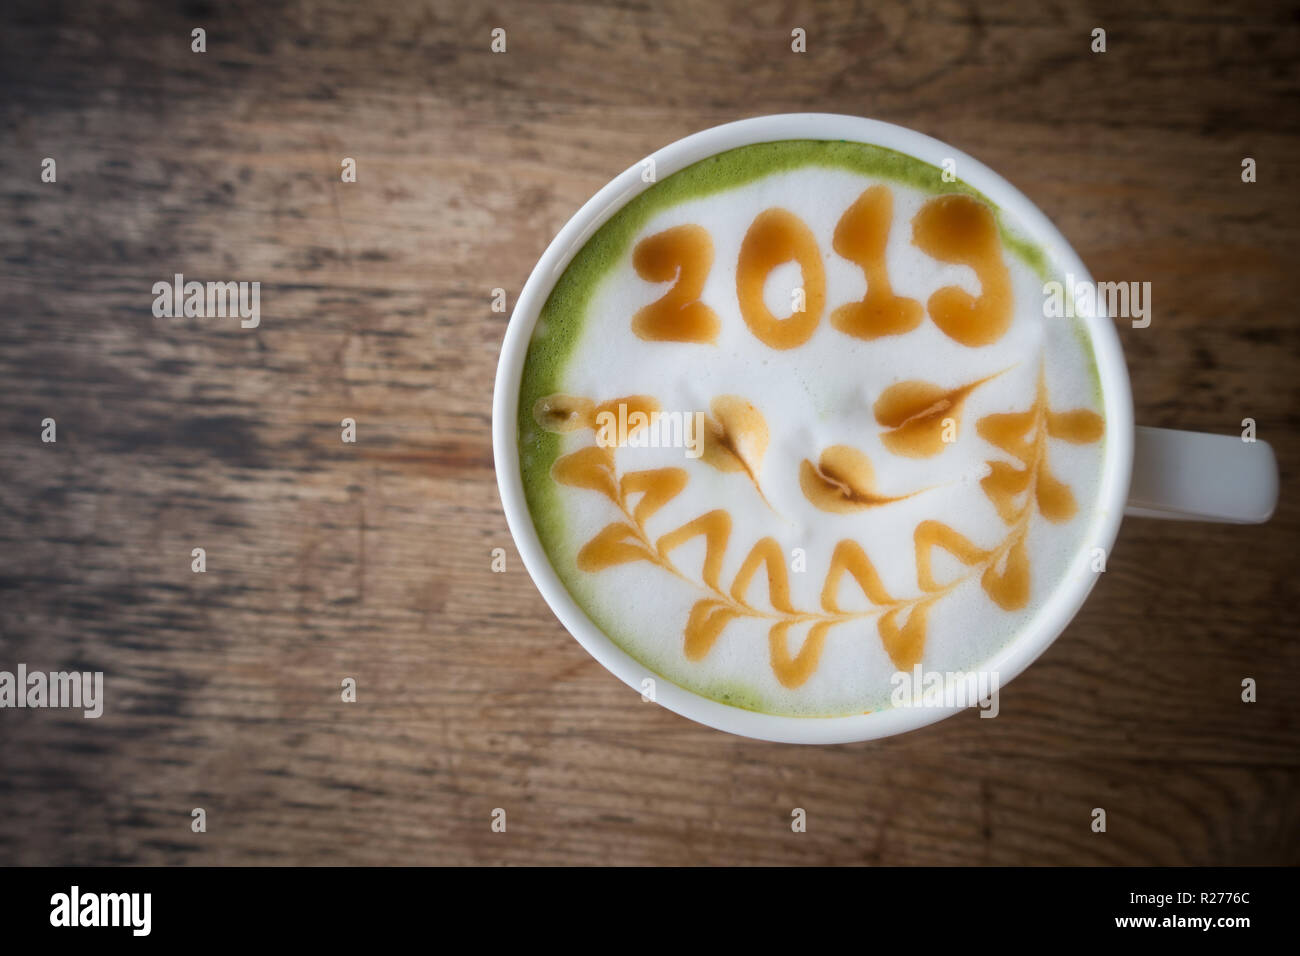 green tea with foam milk art 2019 on wooden table Stock Photo